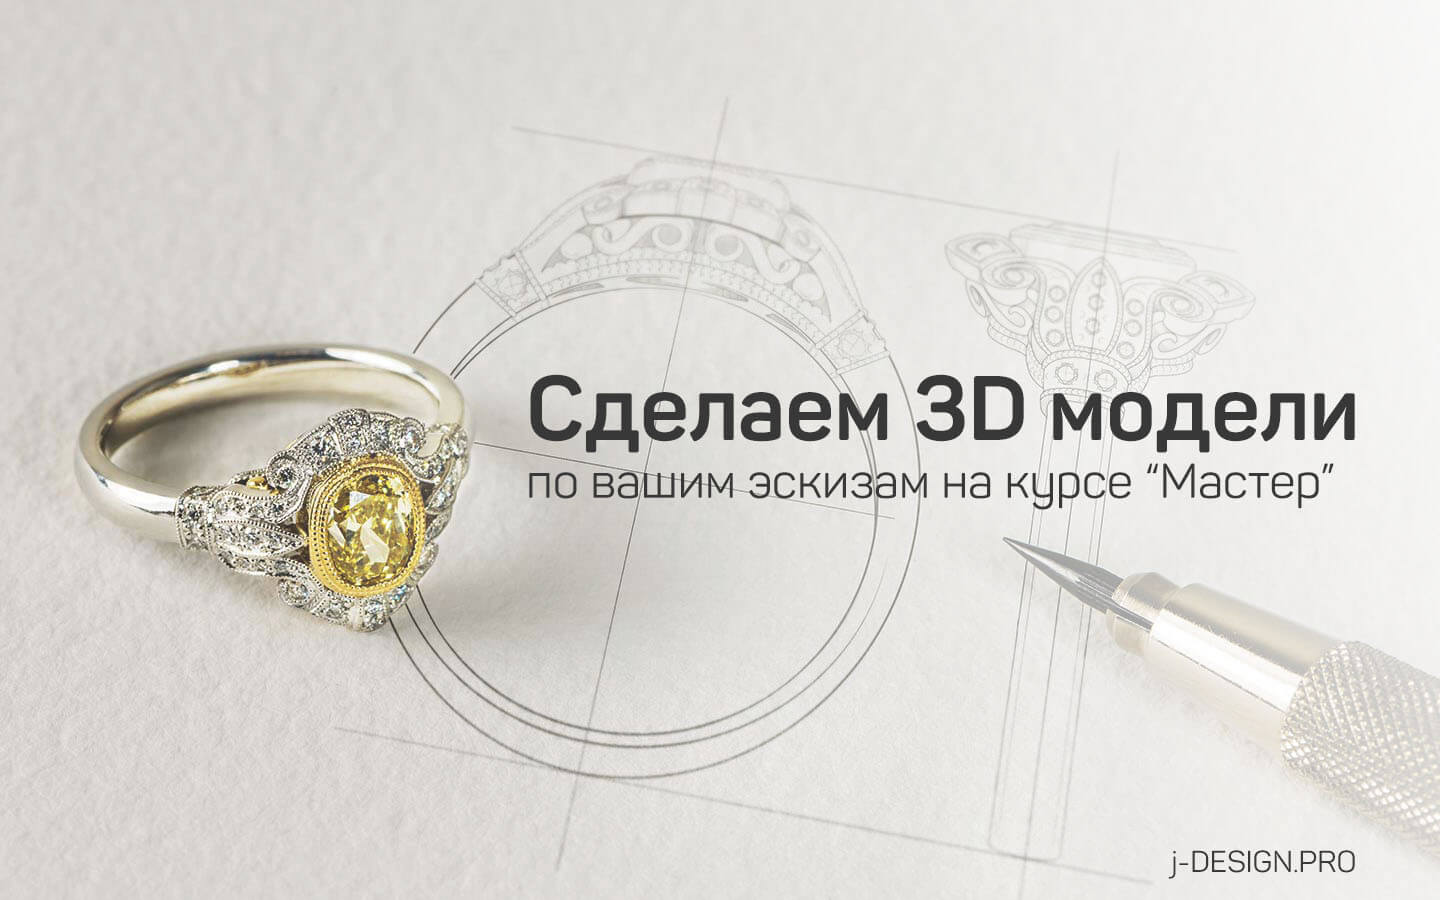 Основы промышленного дизайна и 3D моделирования . Безбатичнова Т.А. Ефимов М.В